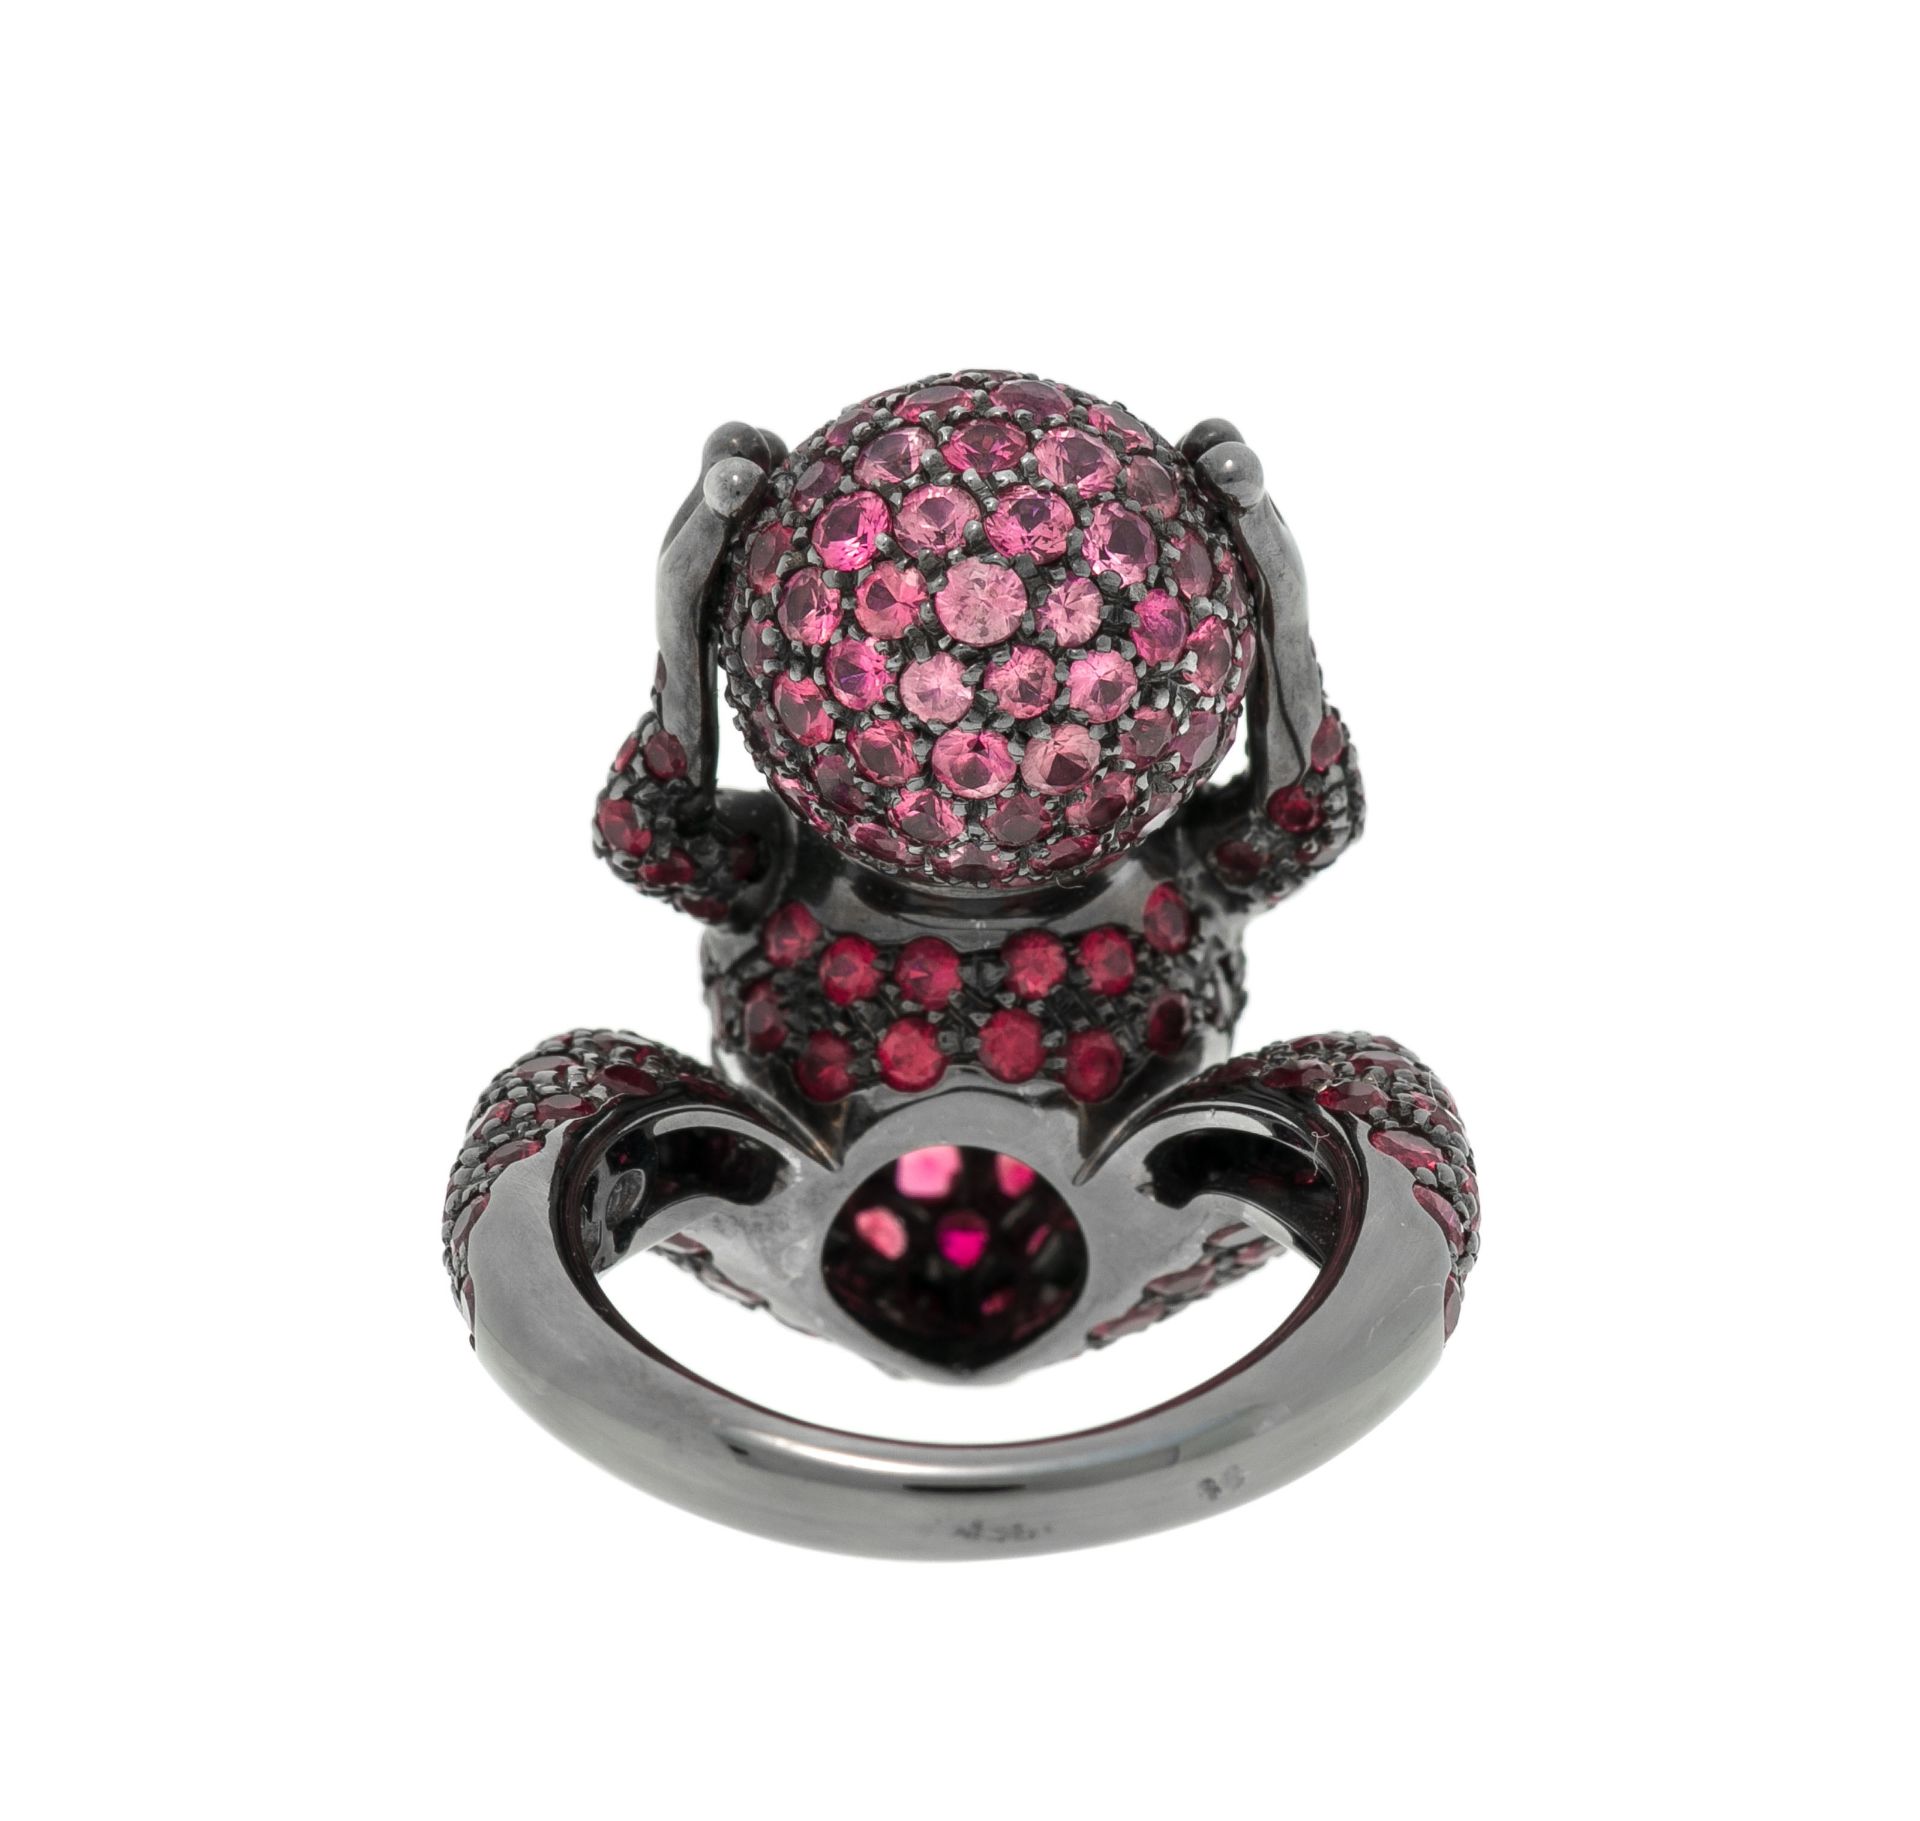 Boucheron, bague figurant une grenouille coassant en or 750 noirci entièrement pavée de saphirs rose - Image 4 of 5